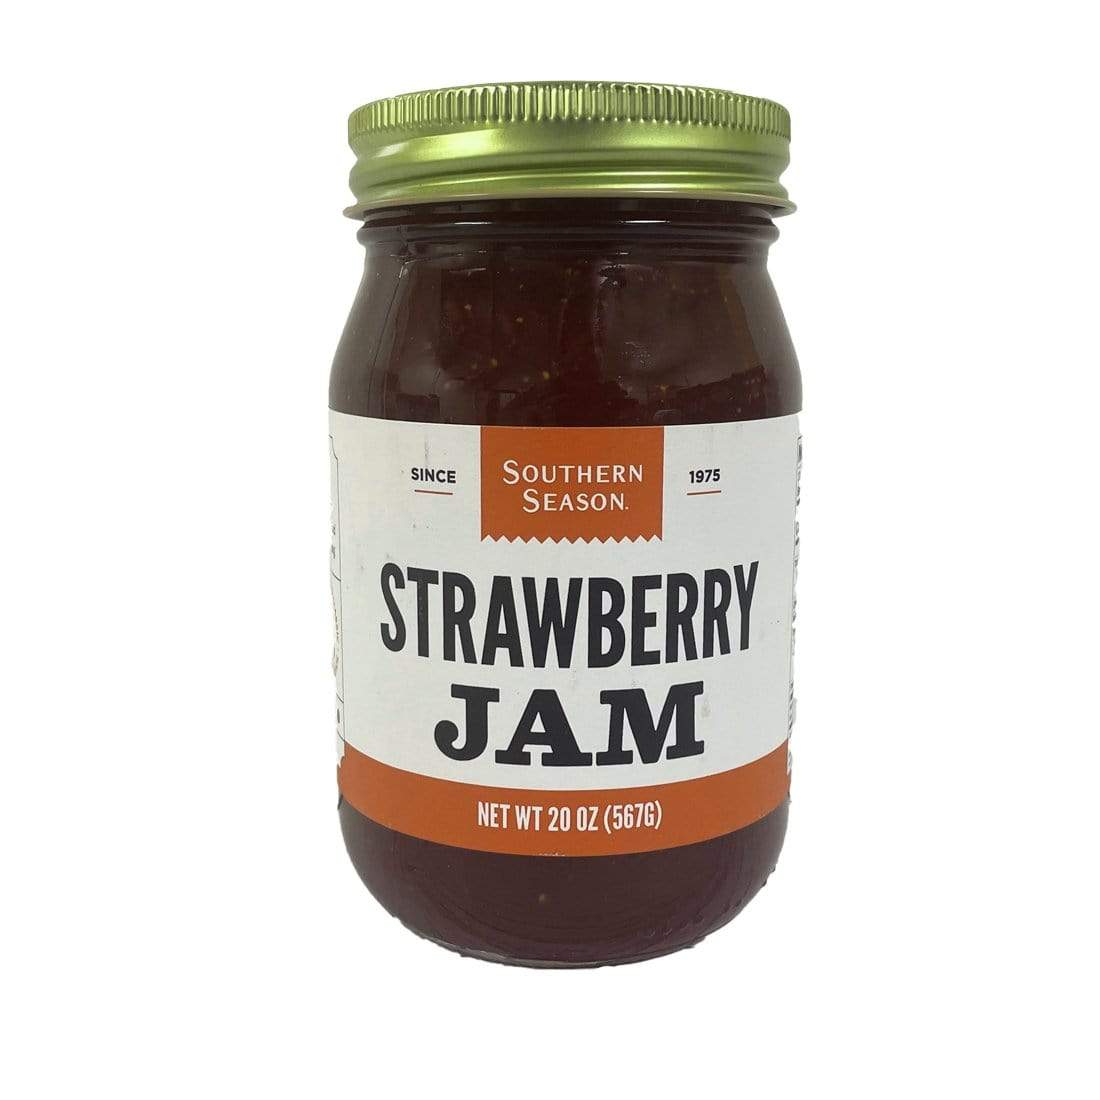 Southern Season Southern Season Strawberry Jam 20 oz